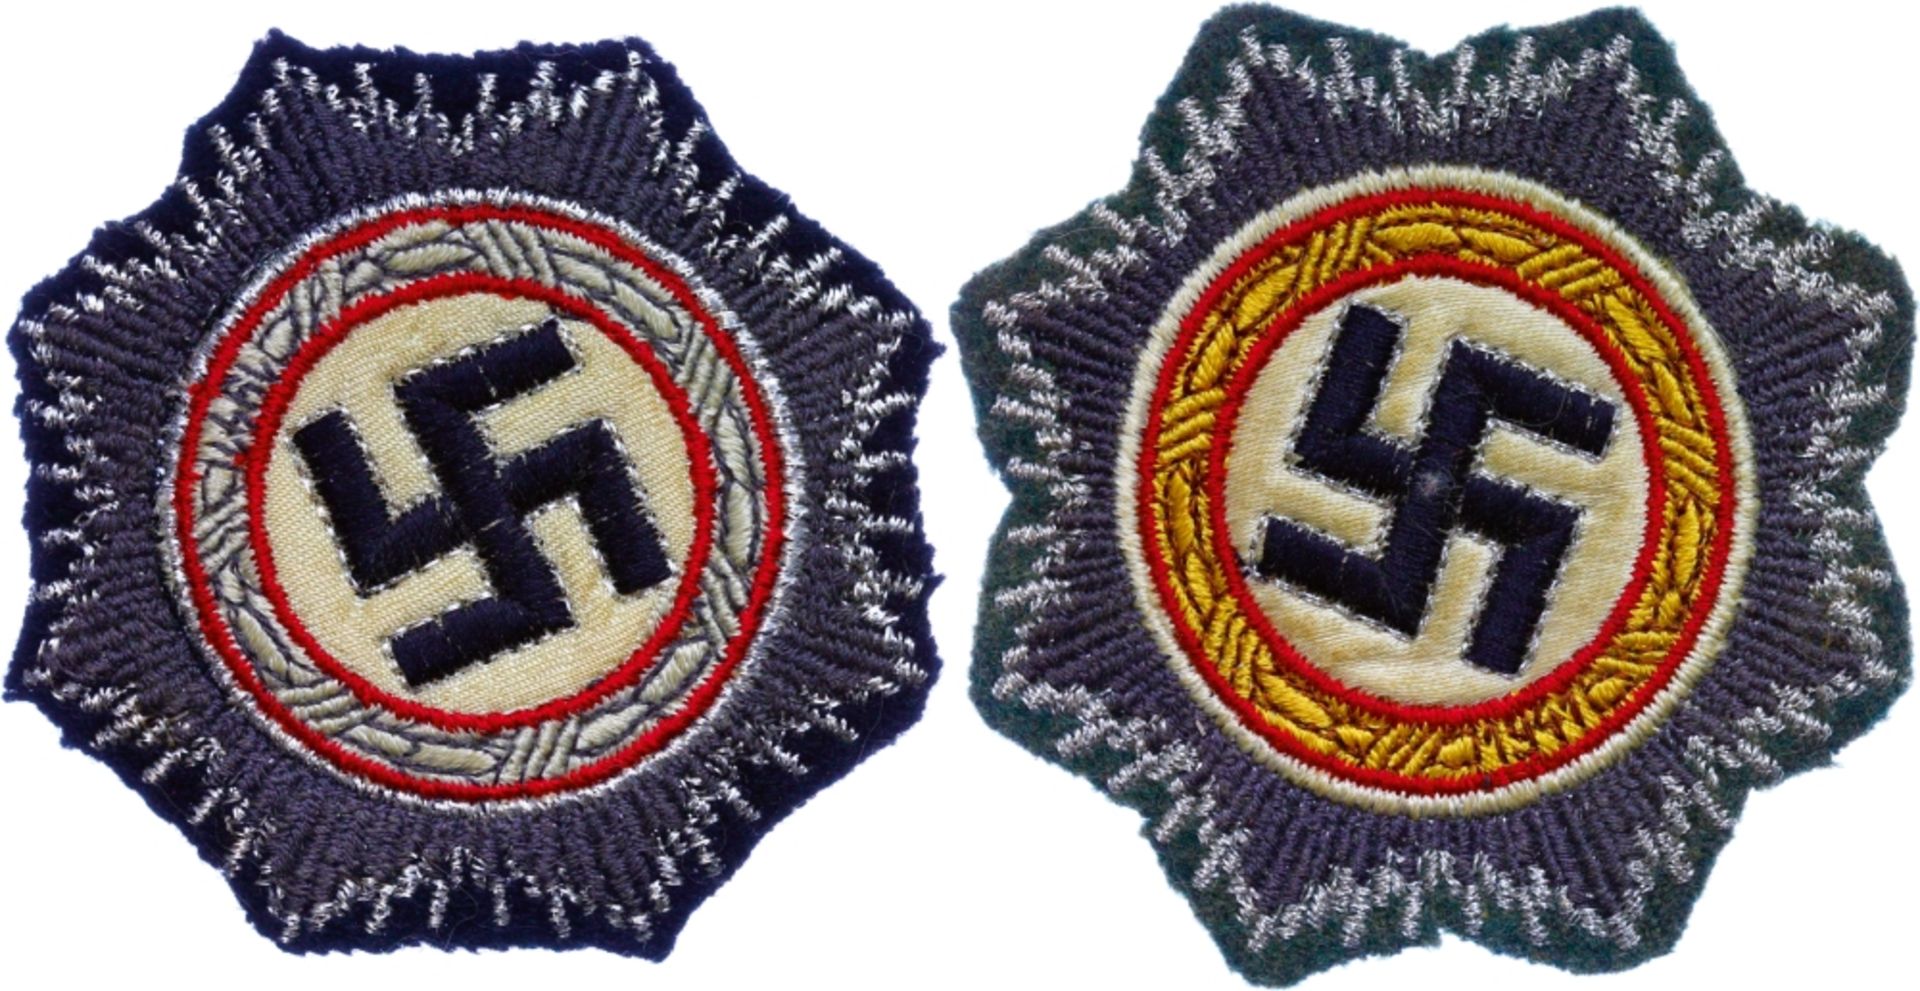 2x Sammleranfertigung Deutsches Kreuz, Stoffausführung, für die Wehrmacht auf feldgrauem Stoff in Go